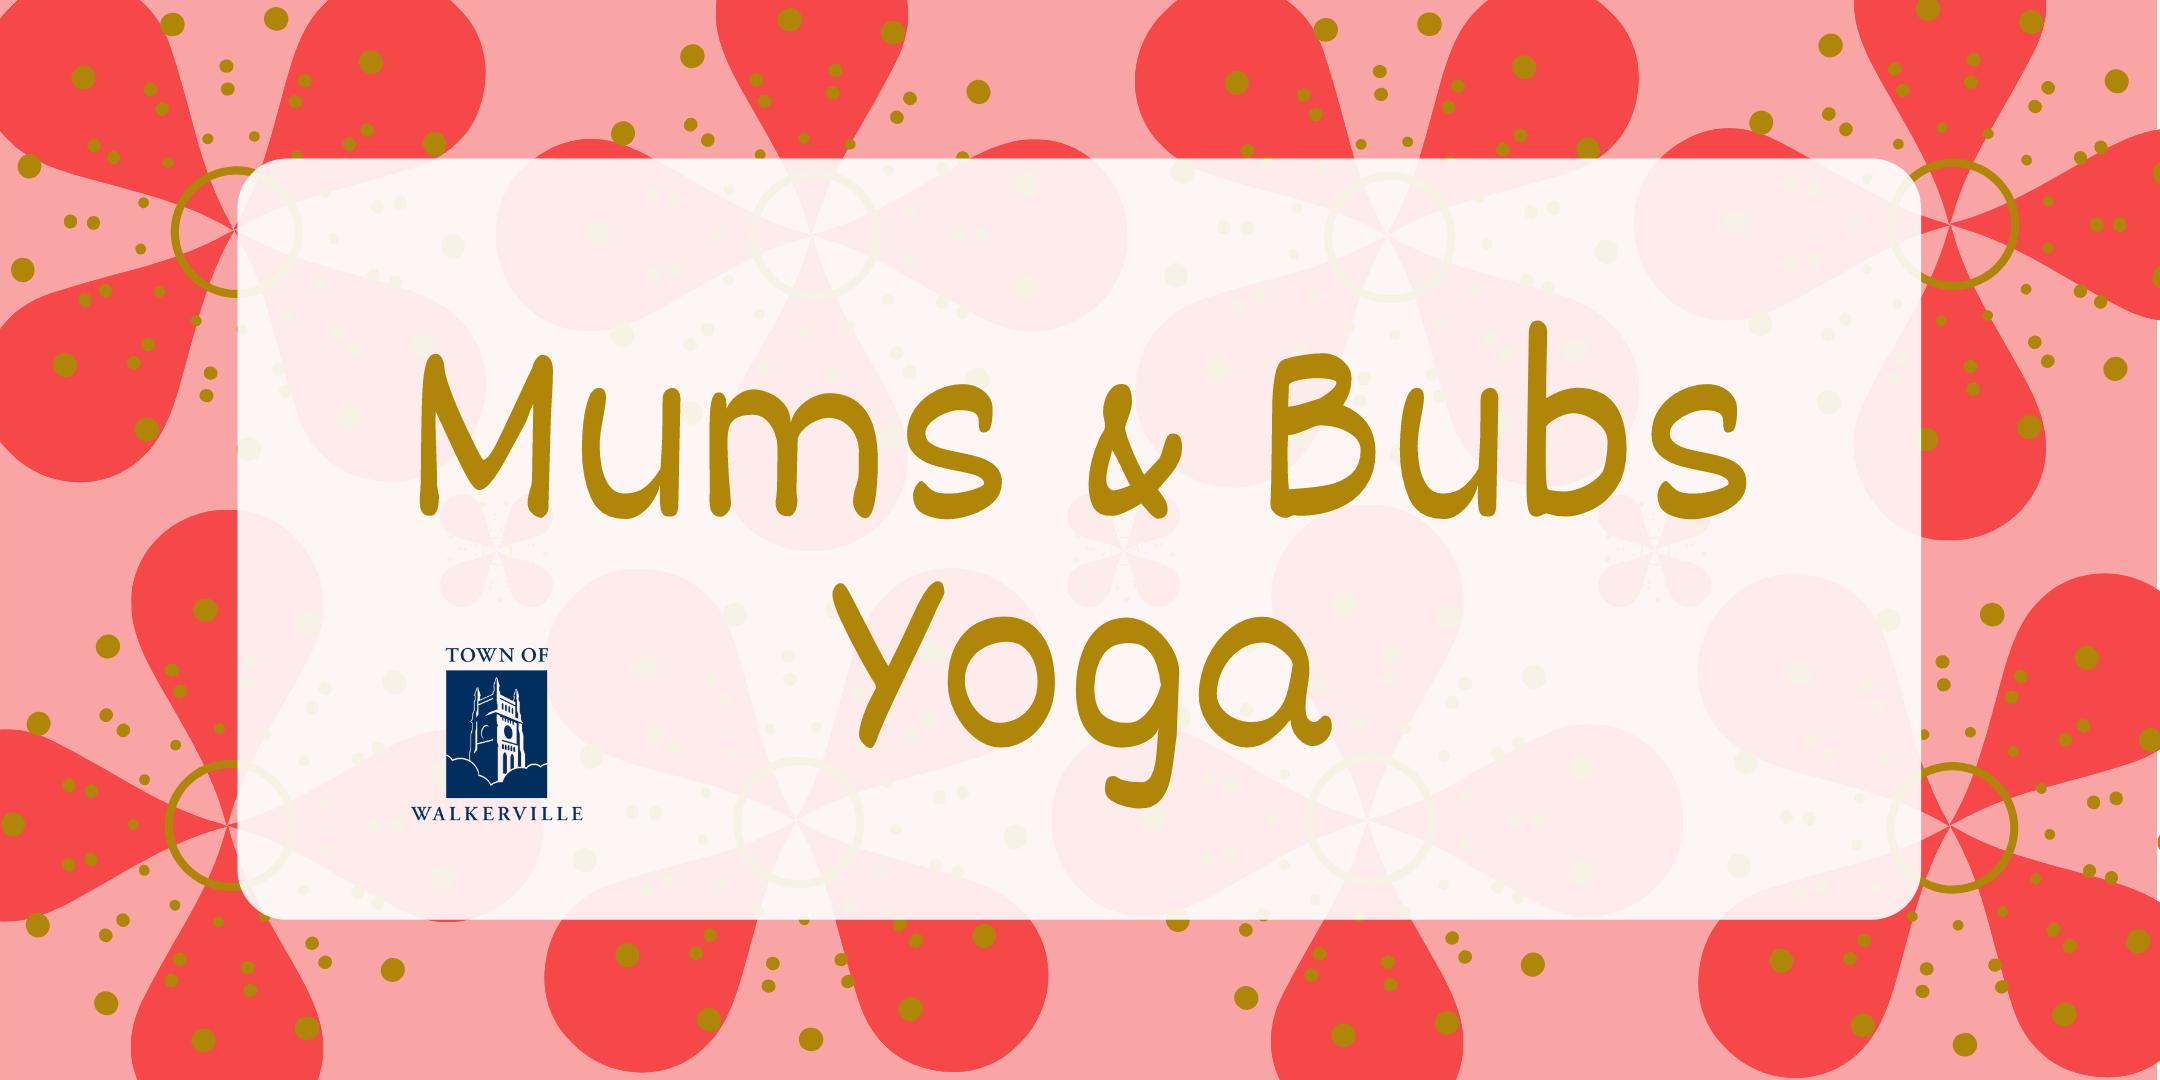 Mums & Bubs Yoga